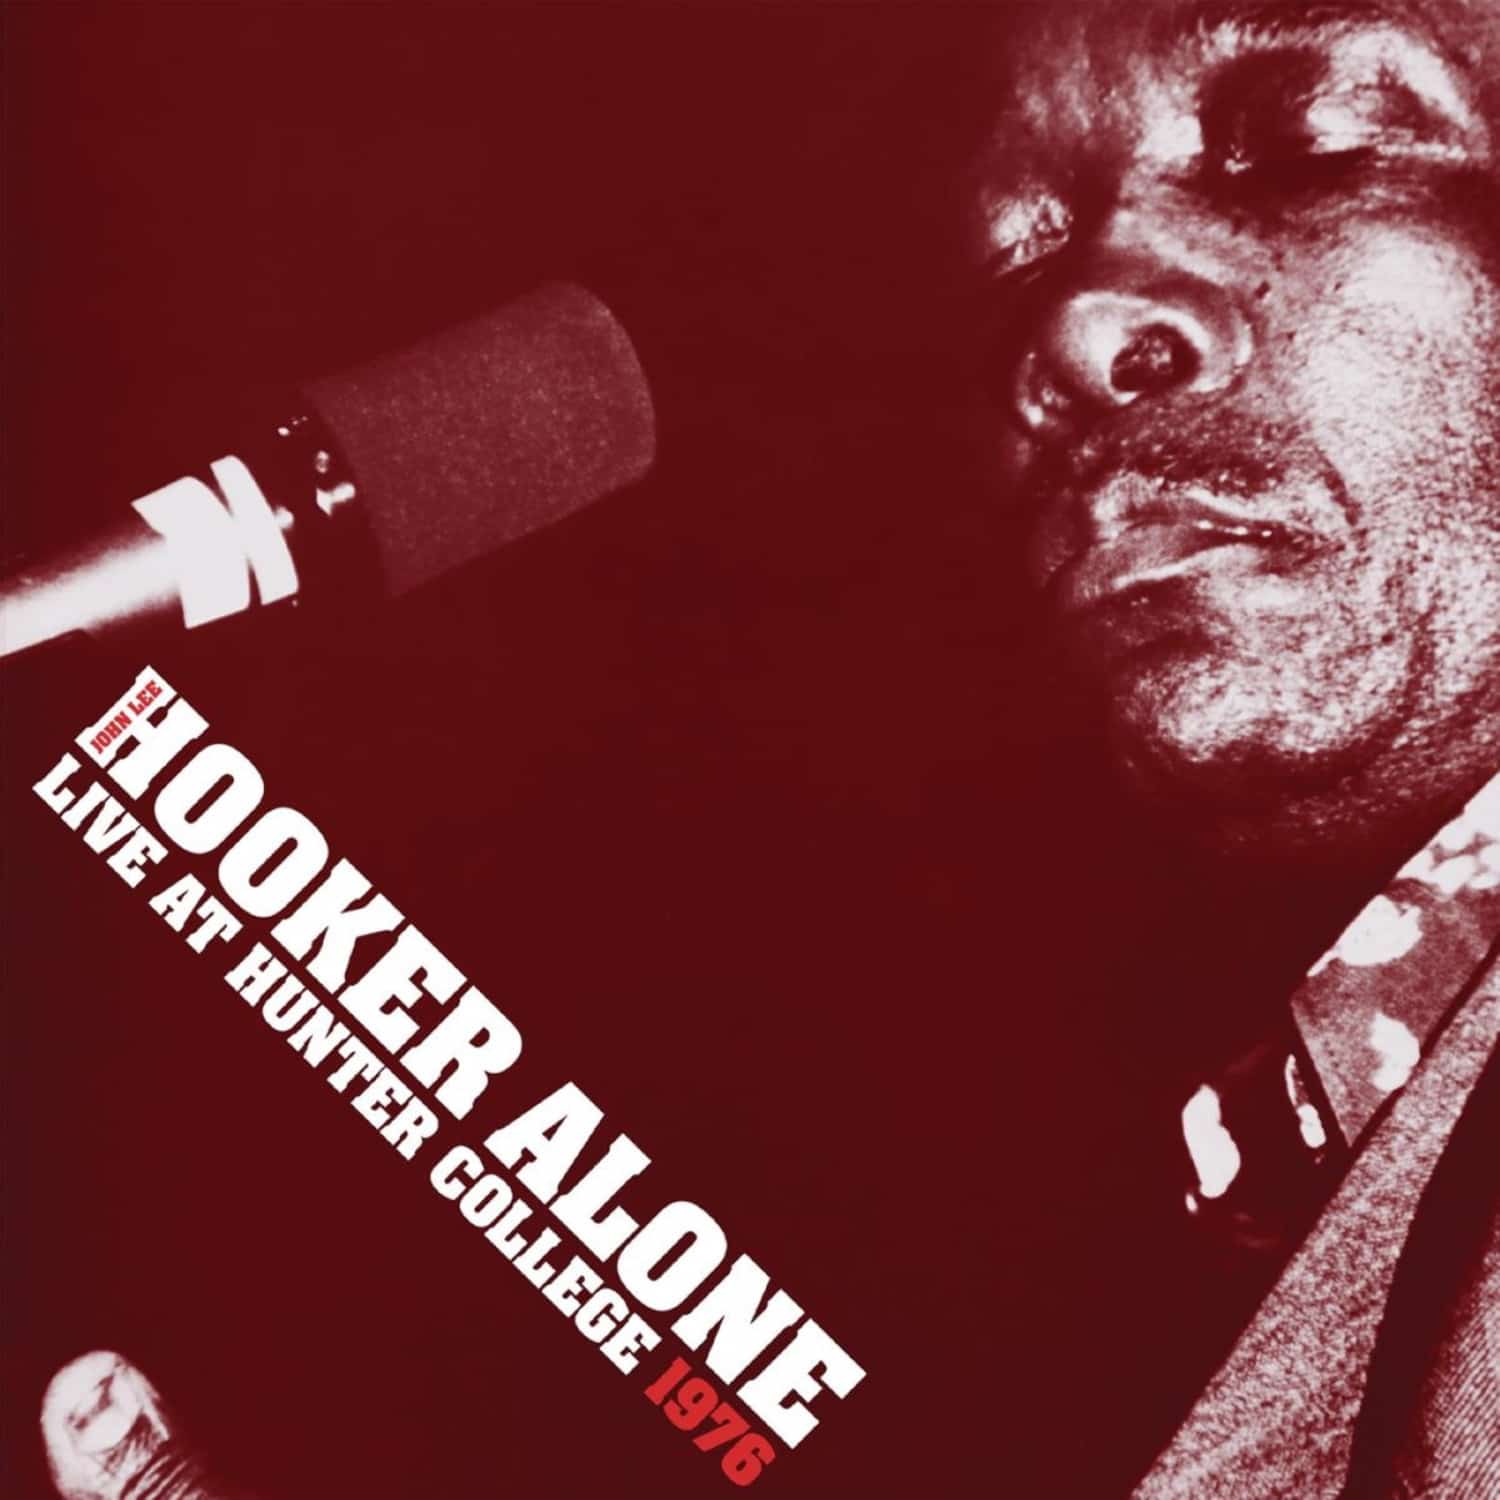 John Lee Hooker - ALONE:LIVE AT HUNTER COLLEGE 1976 